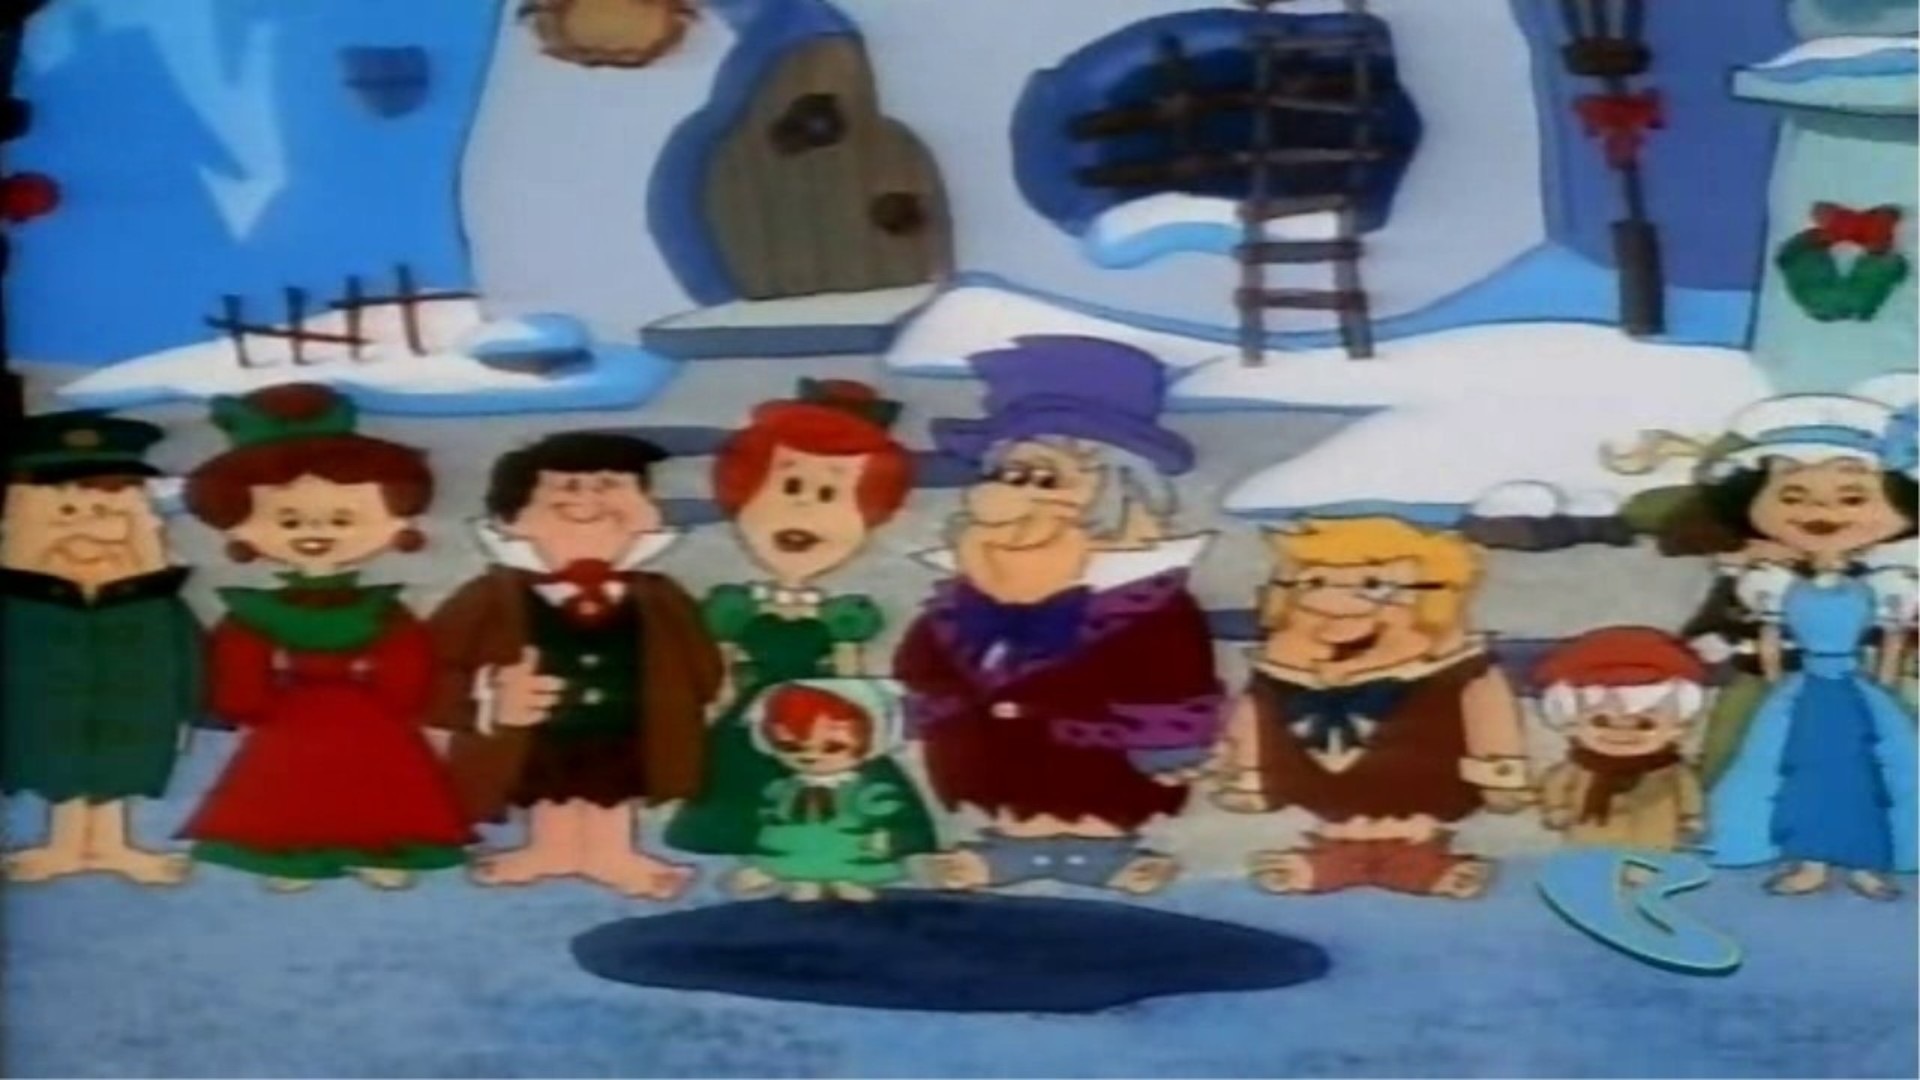 1920x1080 ... Fred Flintstone as Santa Clause in a Flintstone Christmas . ...